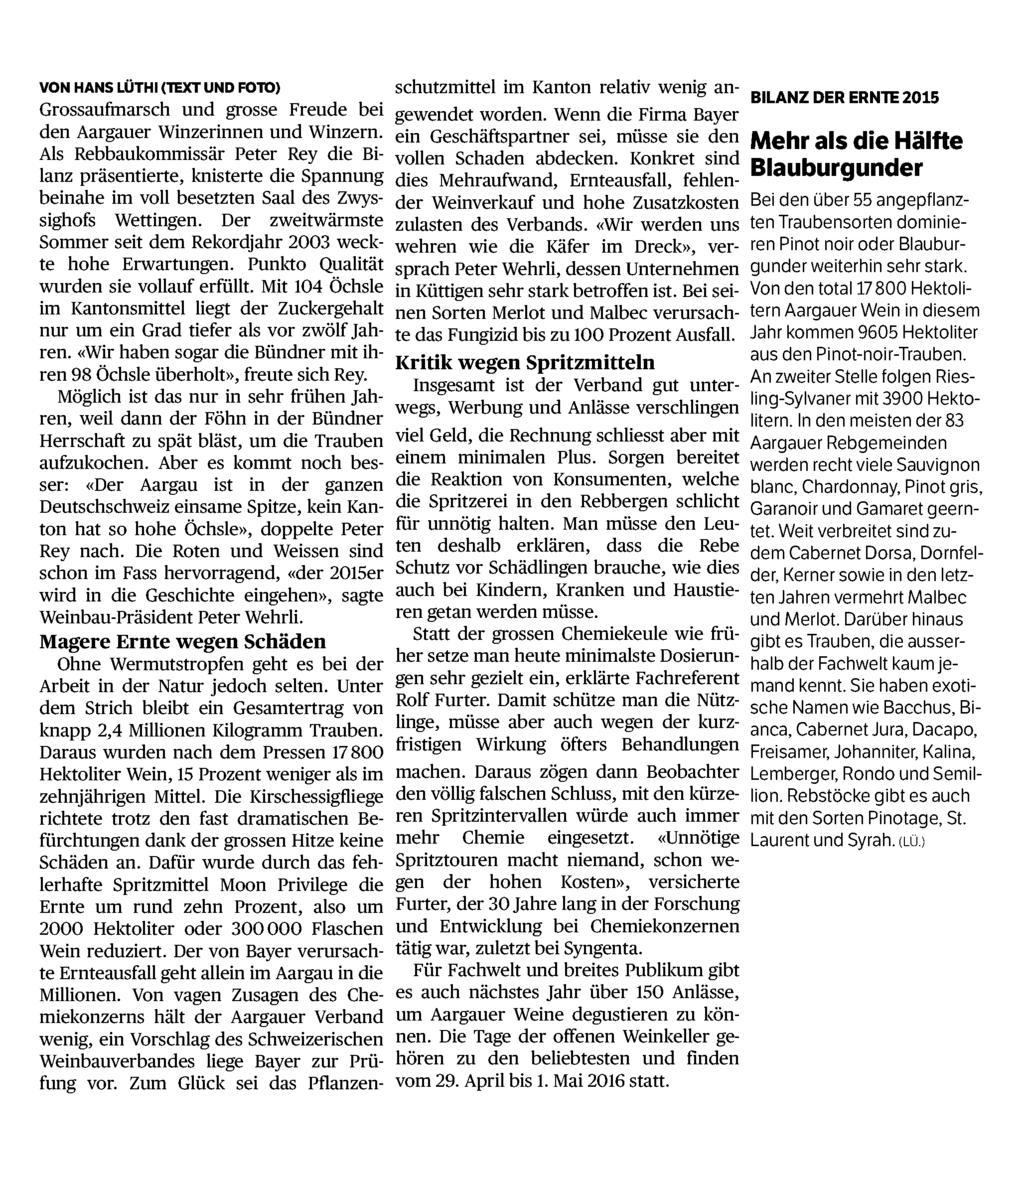 Aargauer Zeitung 5200 Brugg 058/ 200 52 00 www.aargauerzeitung.